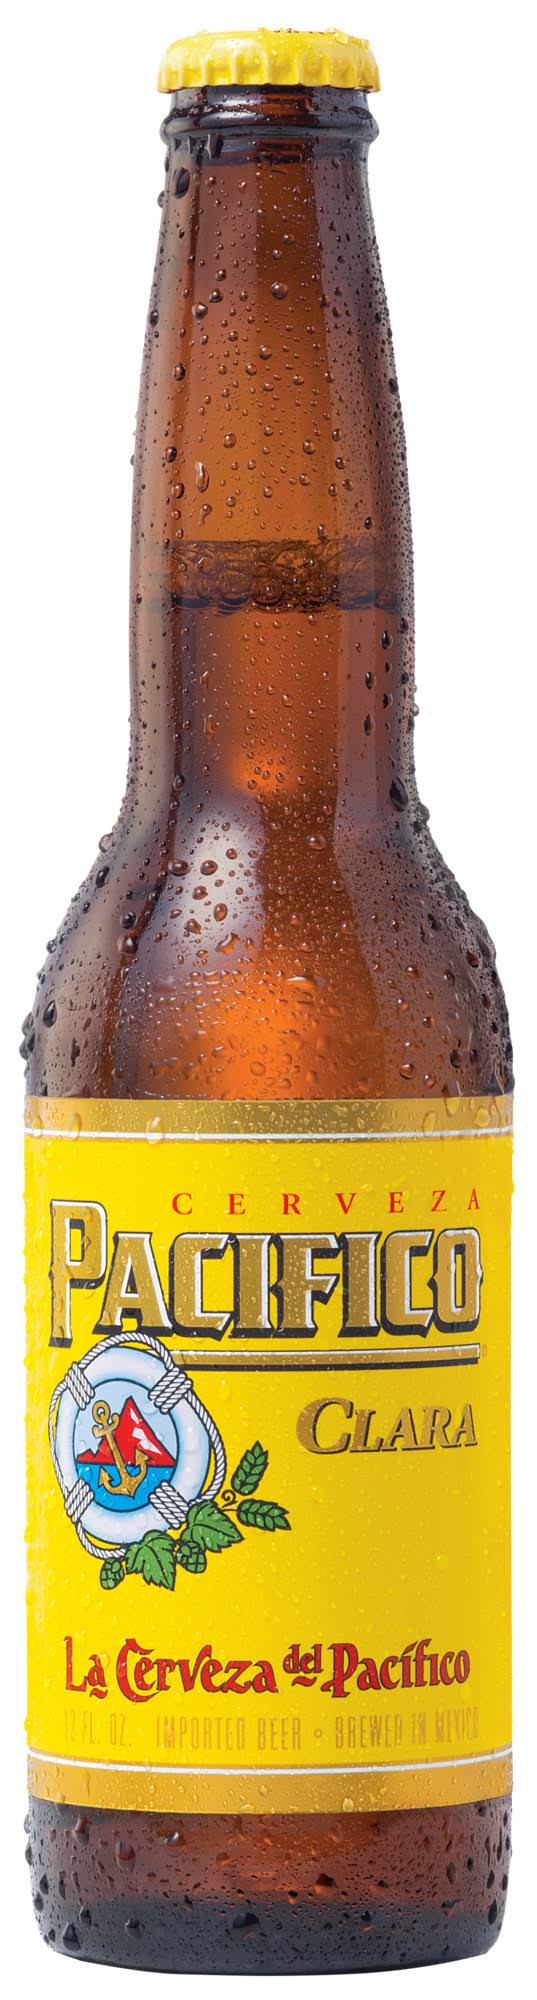 Pacifico Beer, Clara - 12 fl oz